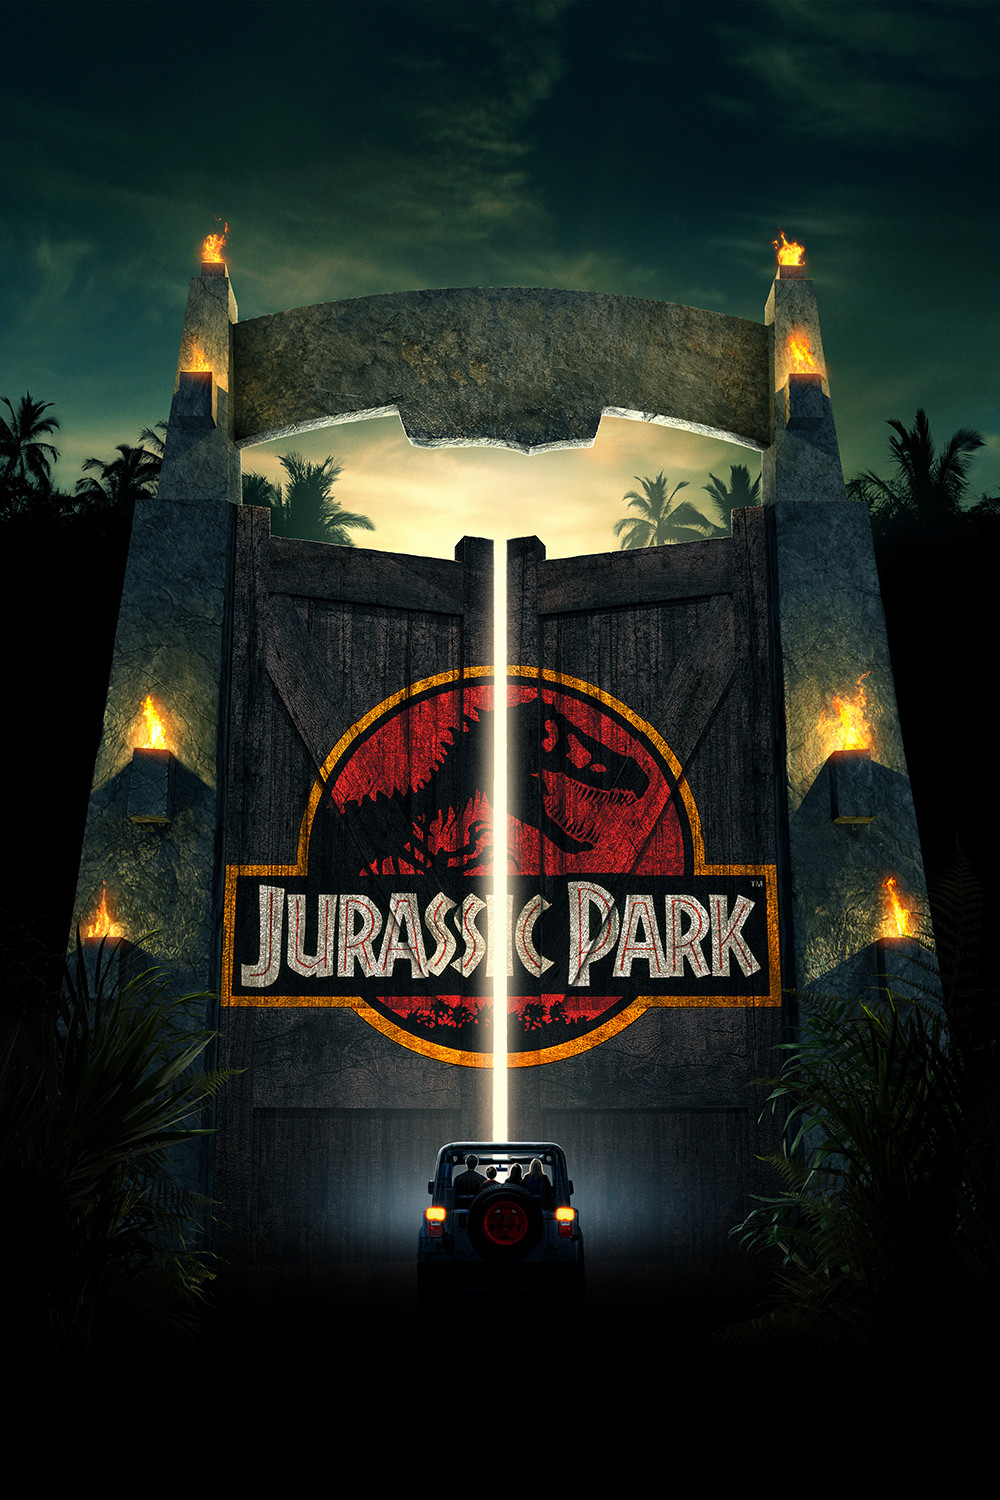 侏罗纪公园四部曲(终极版)[国粤英多音轨/简繁英字幕].Jurassic.Park.Ultimate.Trilogy.1993-2015.1080p.Blu-ray.DTS-HD.MA 7.1.x264-beAst 65.6GB-1.jpg